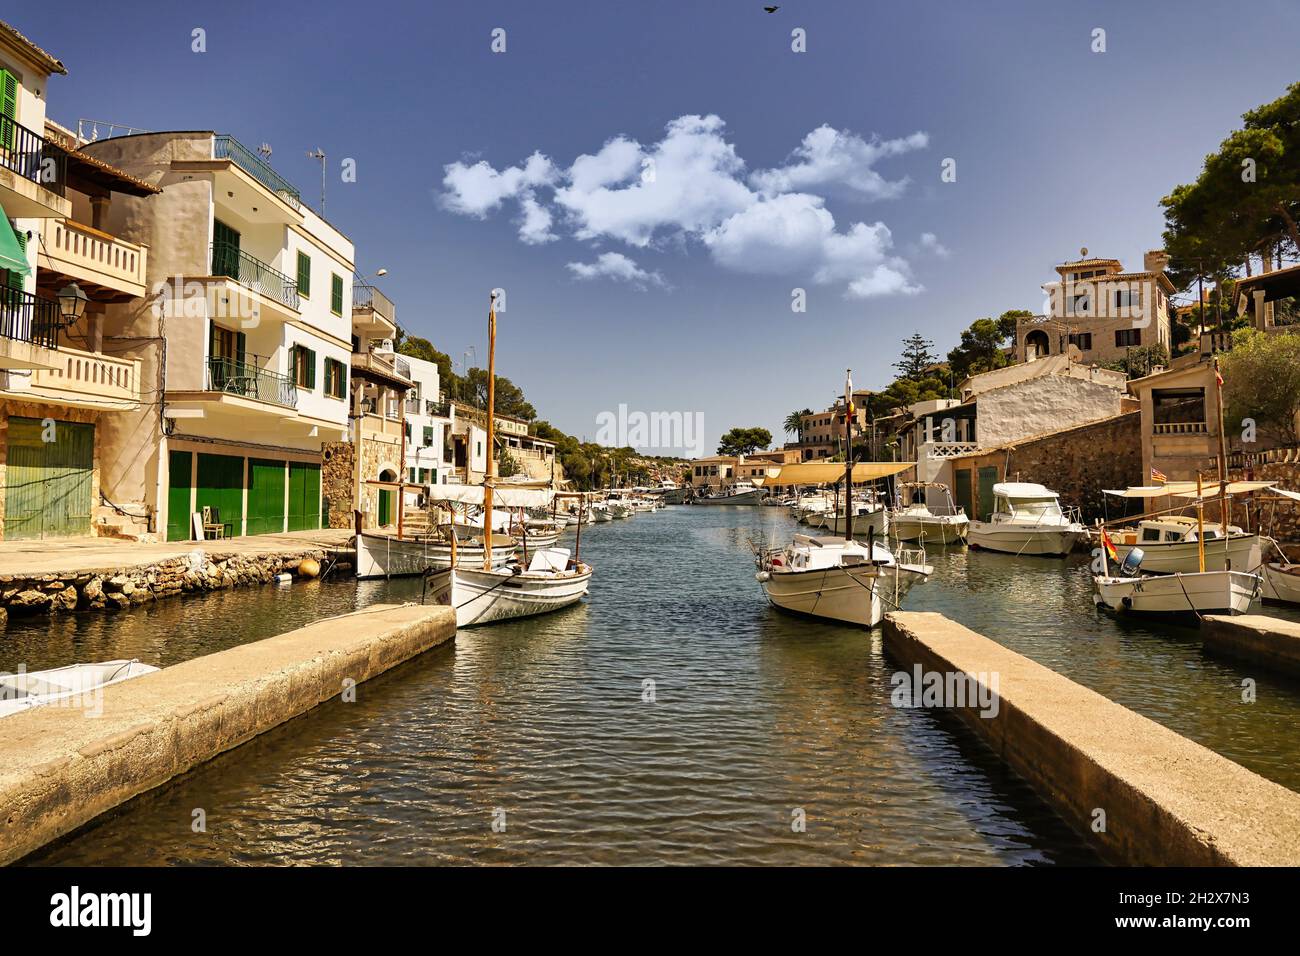 Hafen Bucht von Cala Figuera Bilder Stock Photo